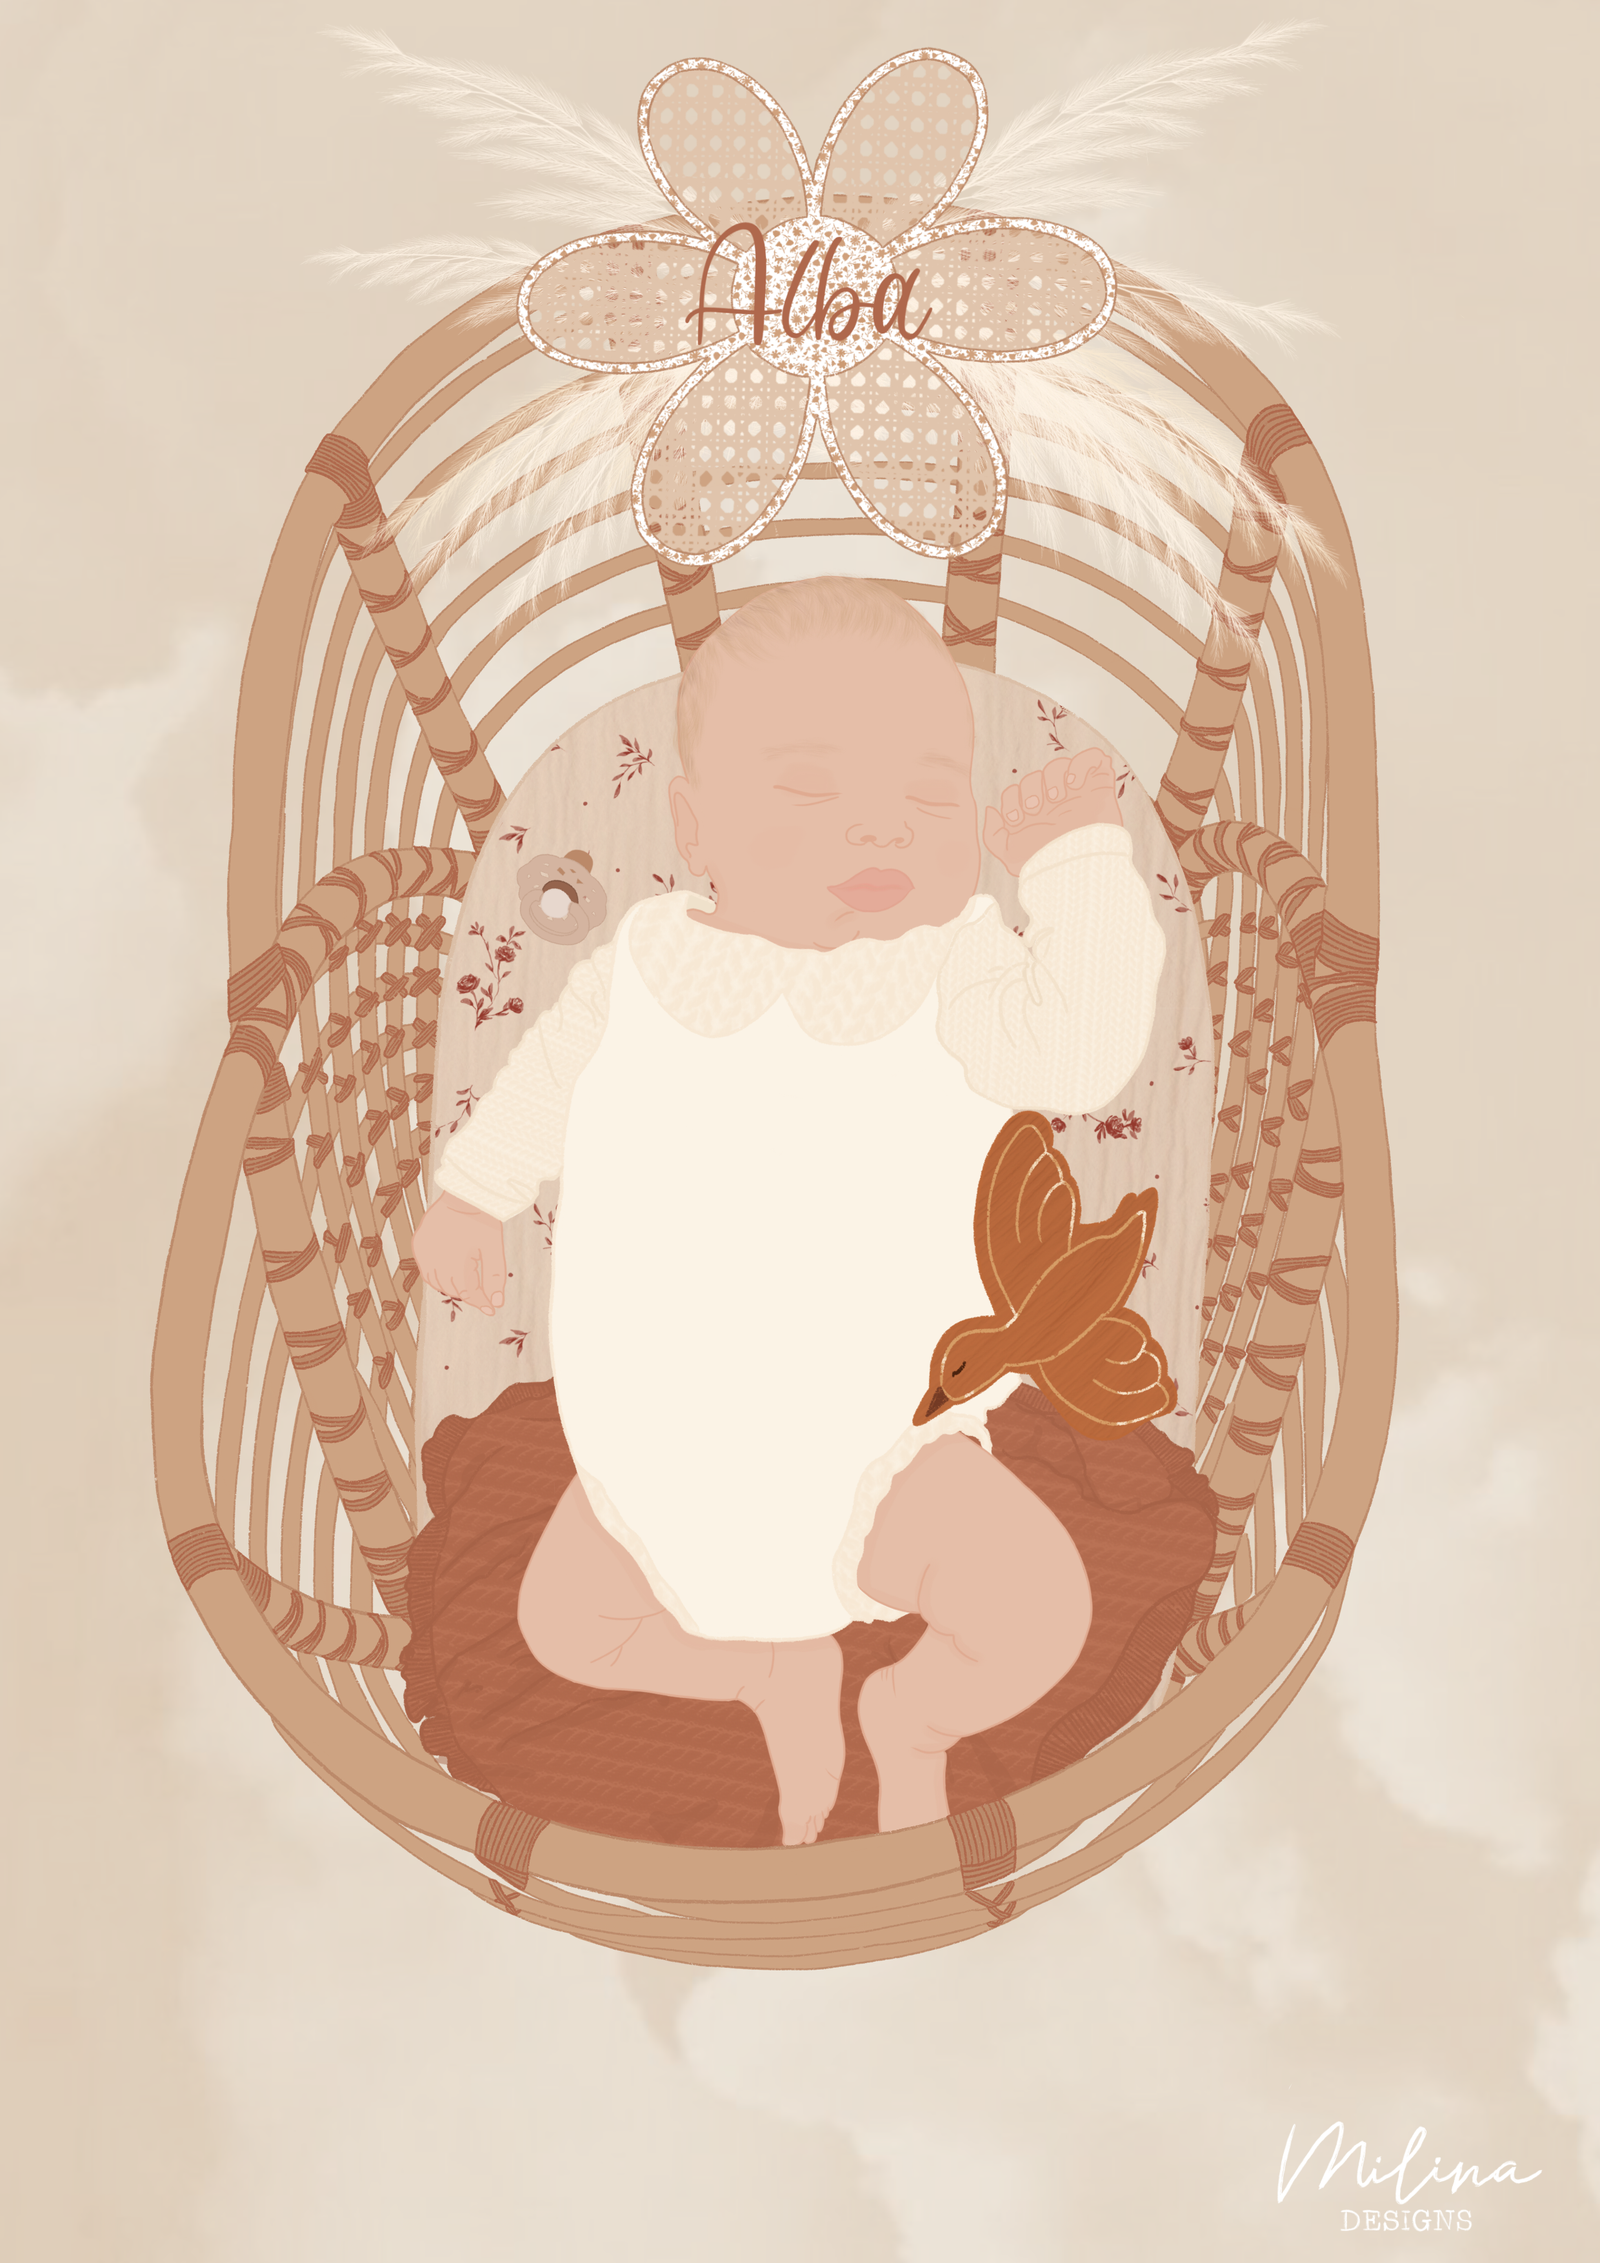 Illustration bébé dans un berceau en rotin